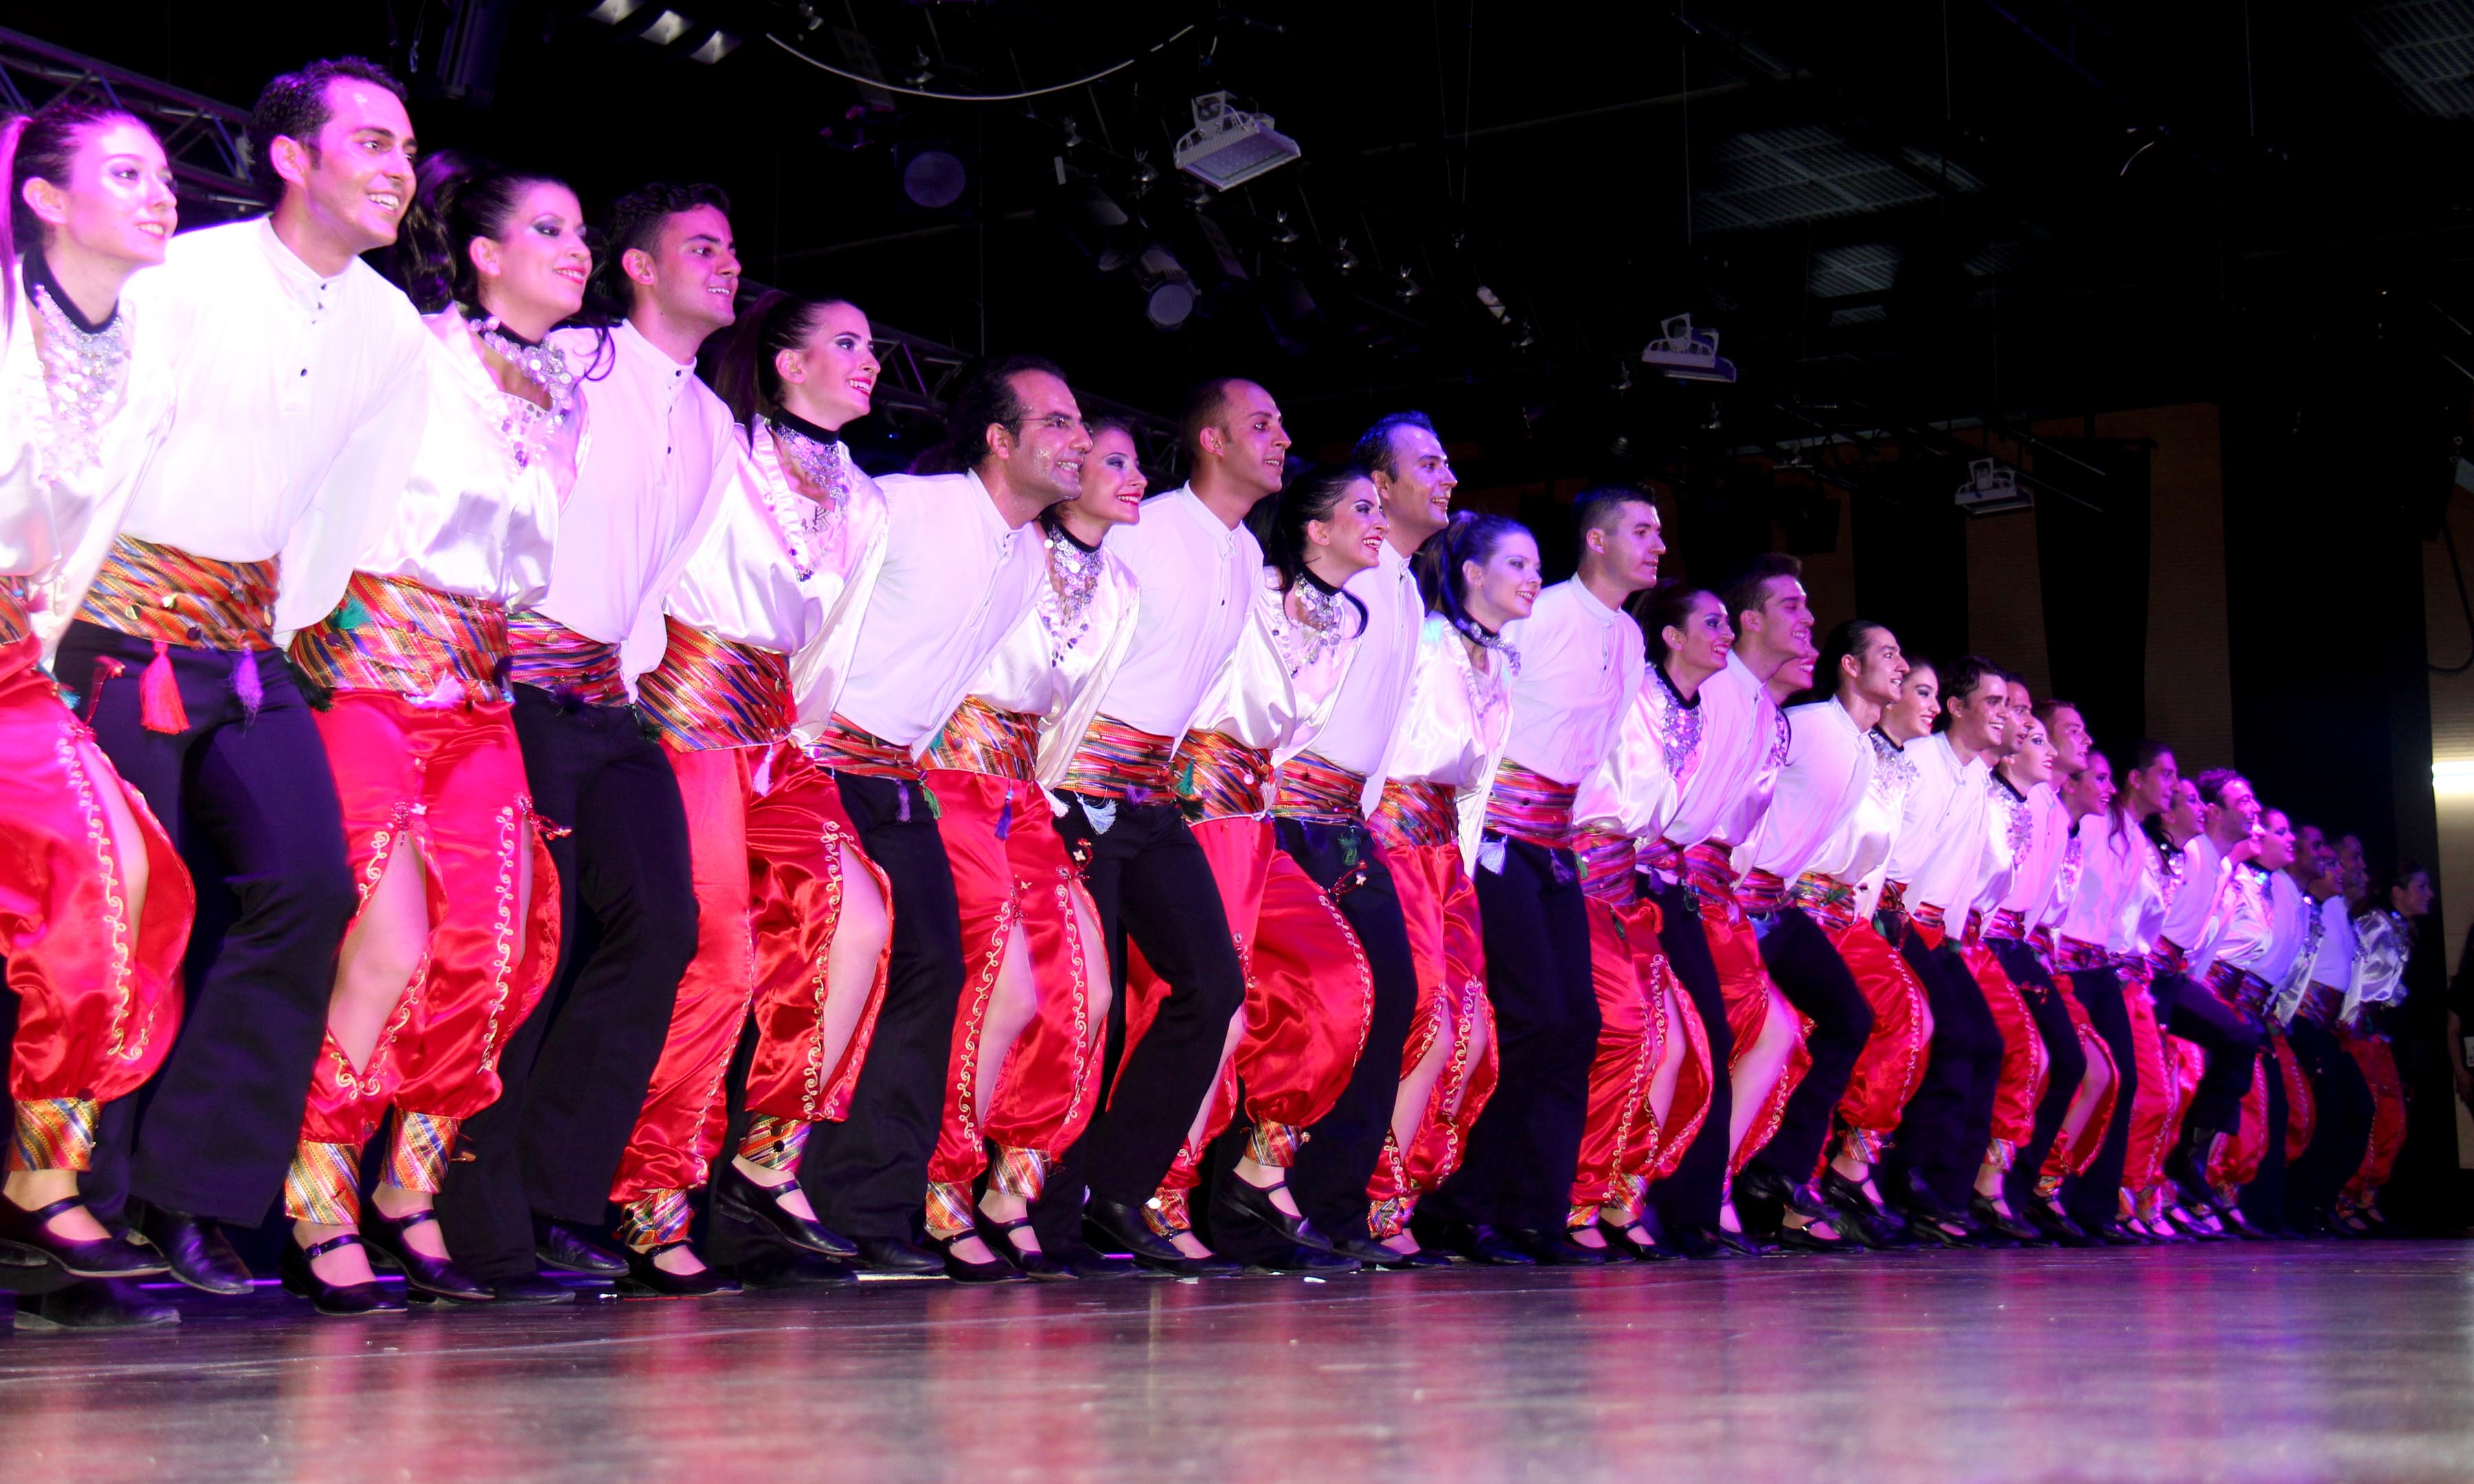 Ankara Haber: Dansa ve sahneye tutkuluysan, HOY-TUR seni bekliyor! İşte Kayıt ve Başvuru Detayları